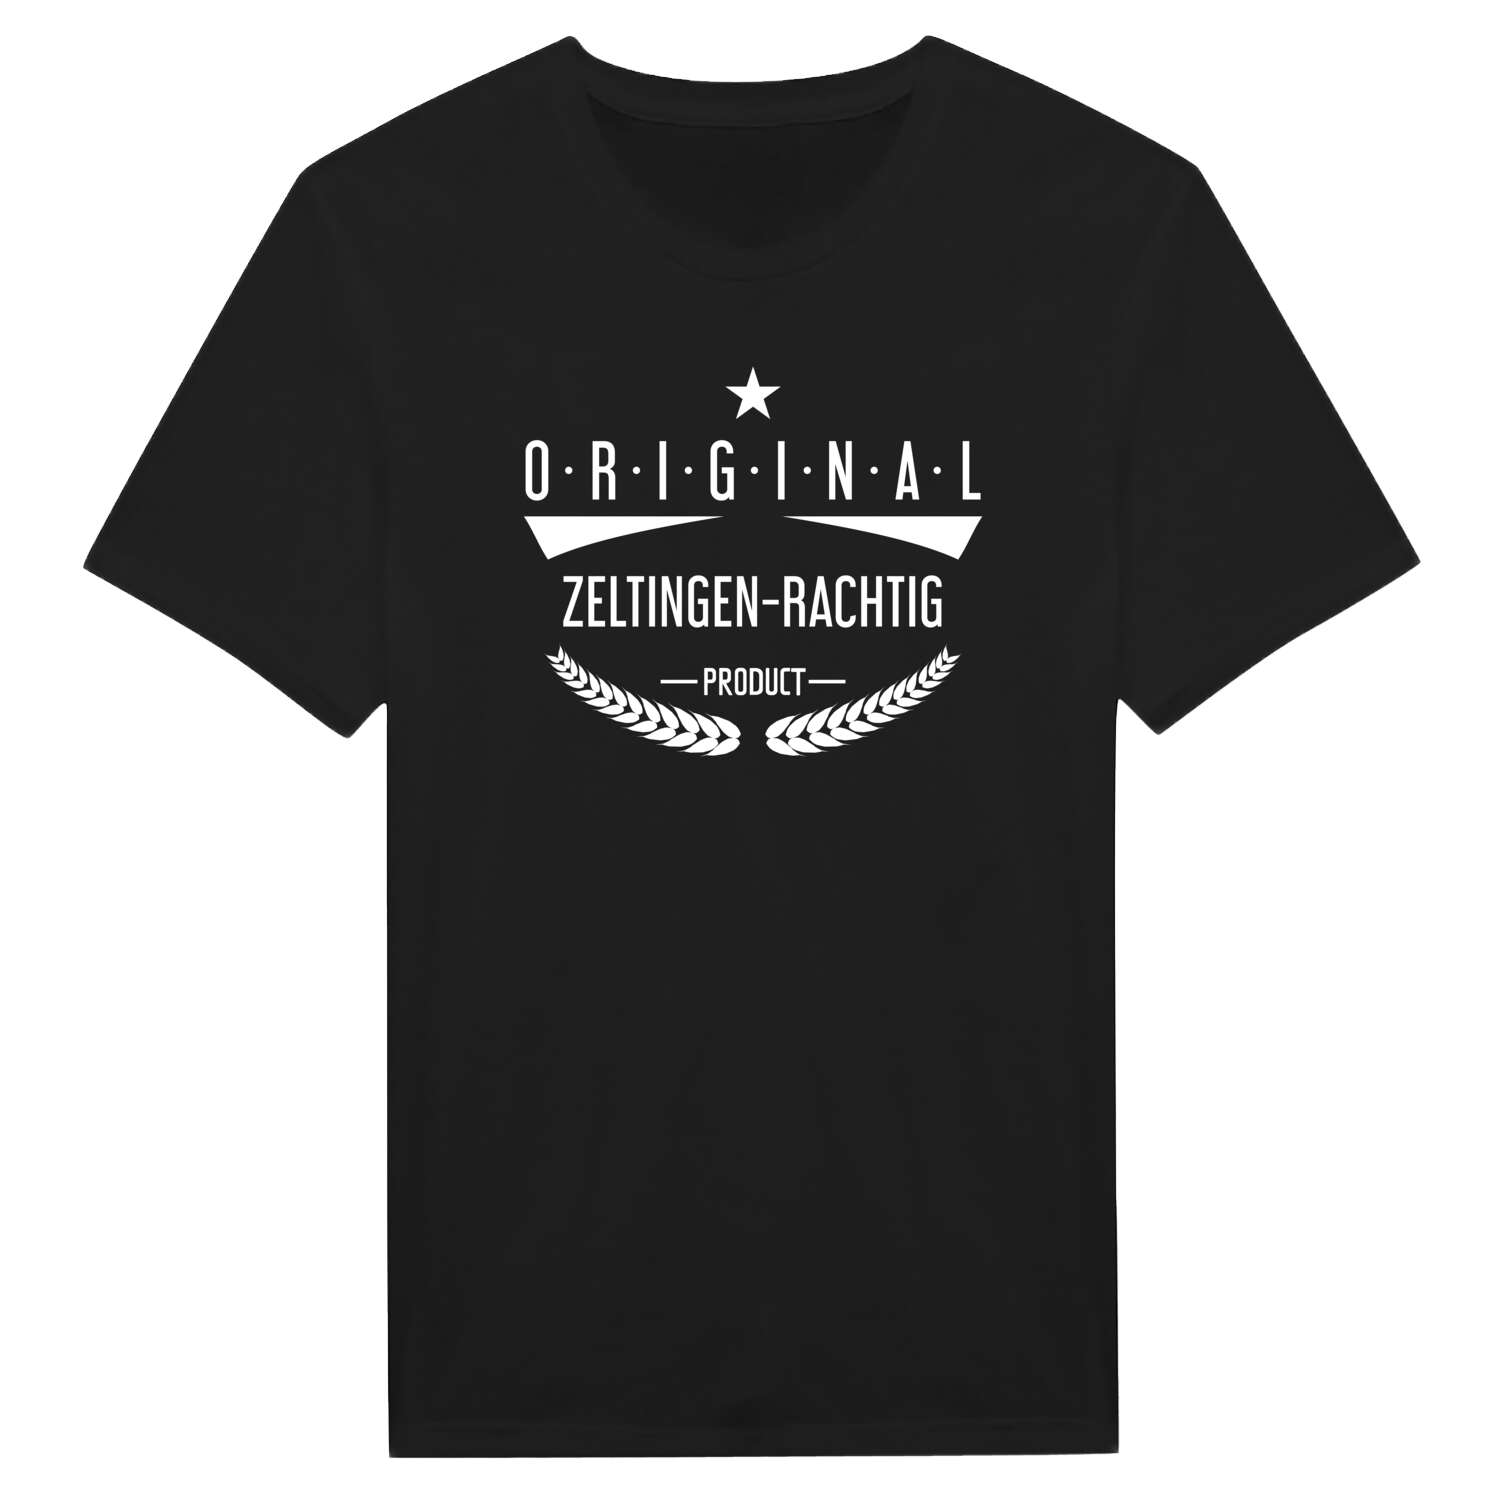 Zeltingen-Rachtig T-Shirt »Original Product«